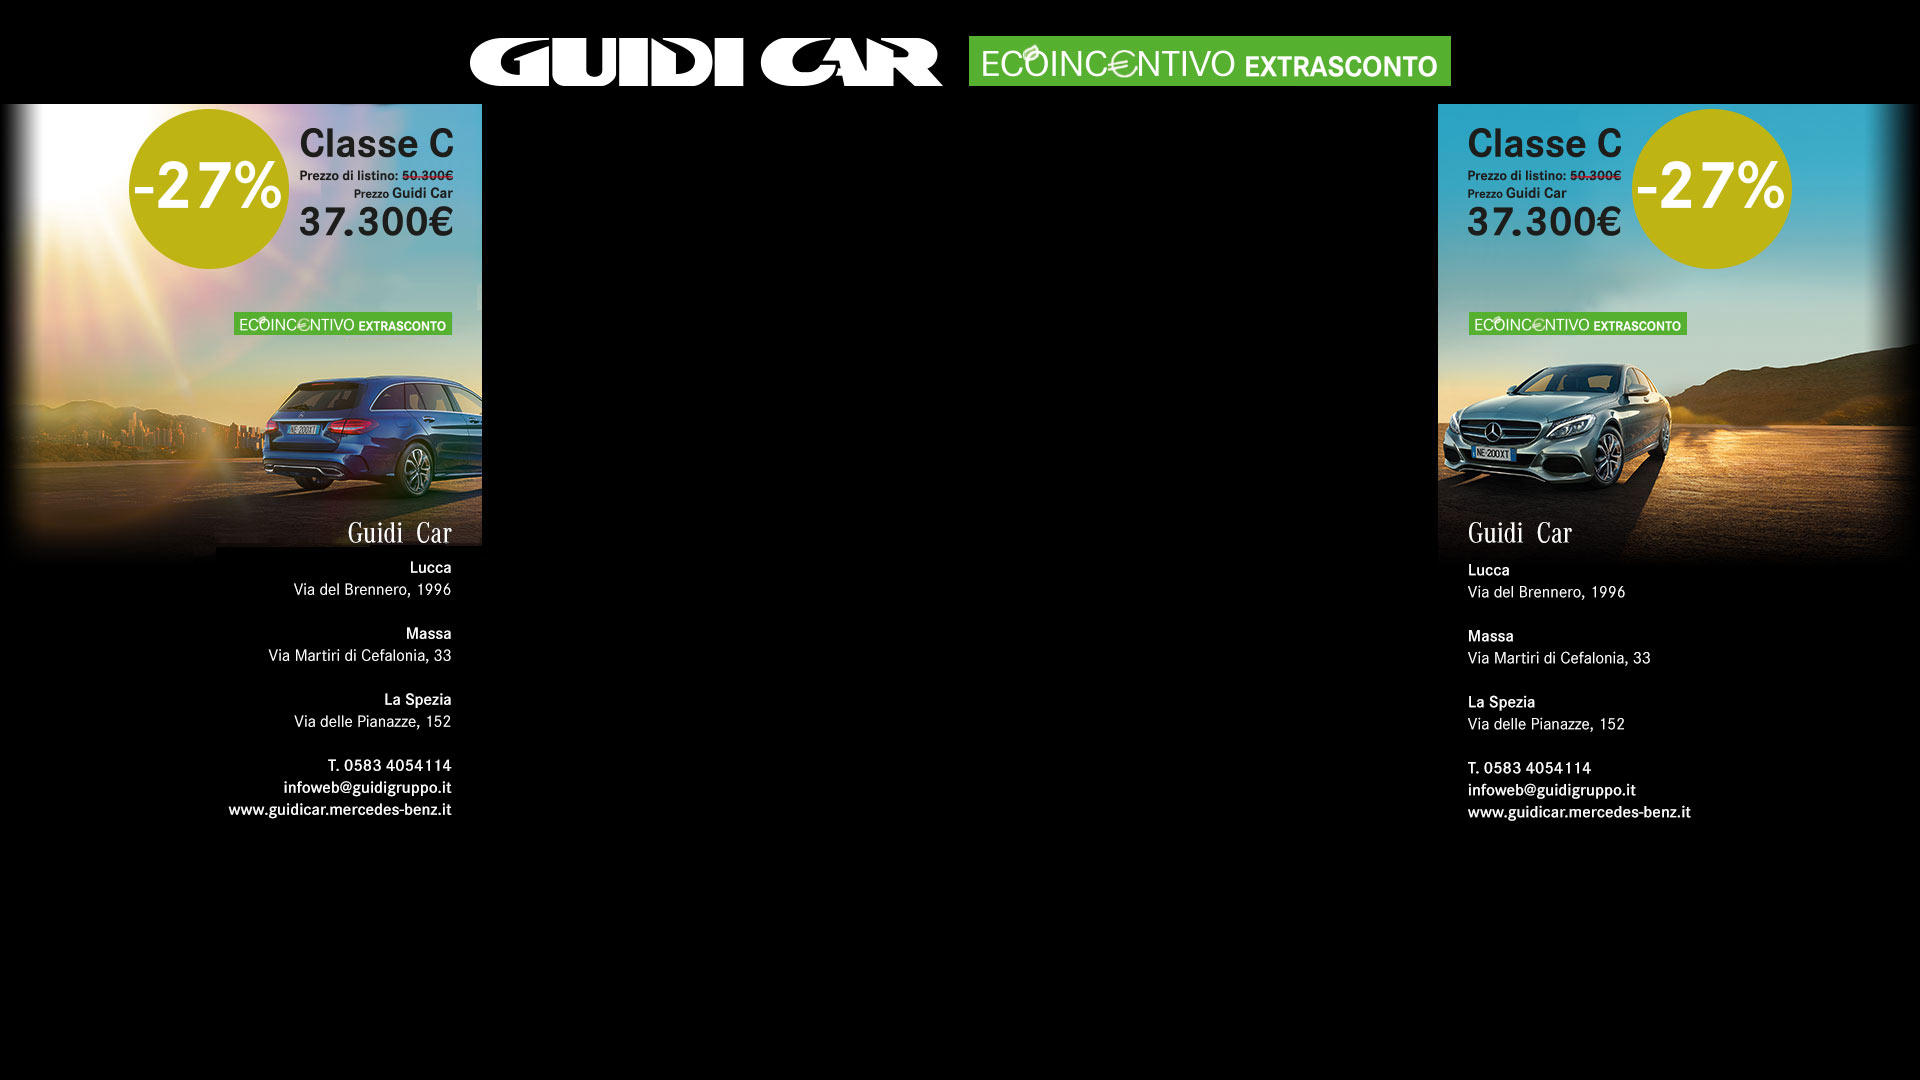 Guidicar 2018 02 Toscana Liguria Marzo Mercedes - 1920x1080 Pixels